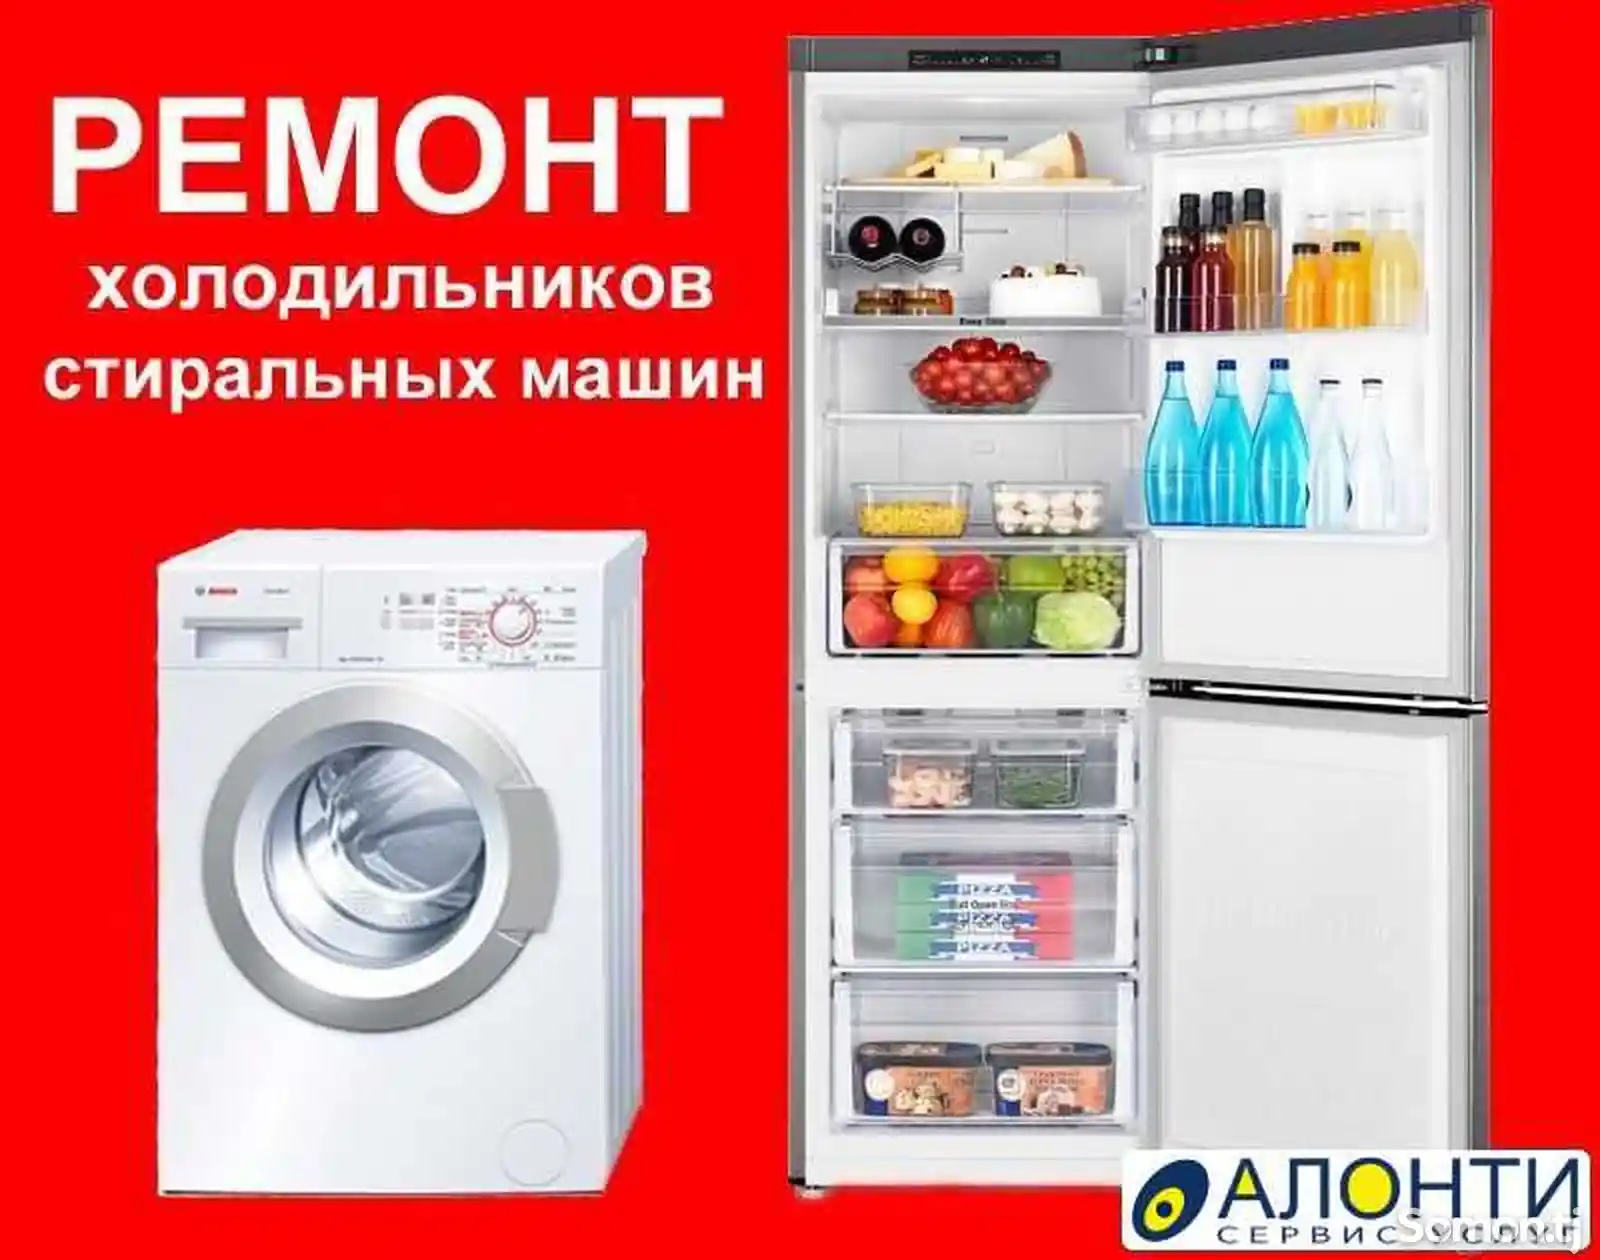 Ремонт холодильников, кондиционеров и стиральных машин-2